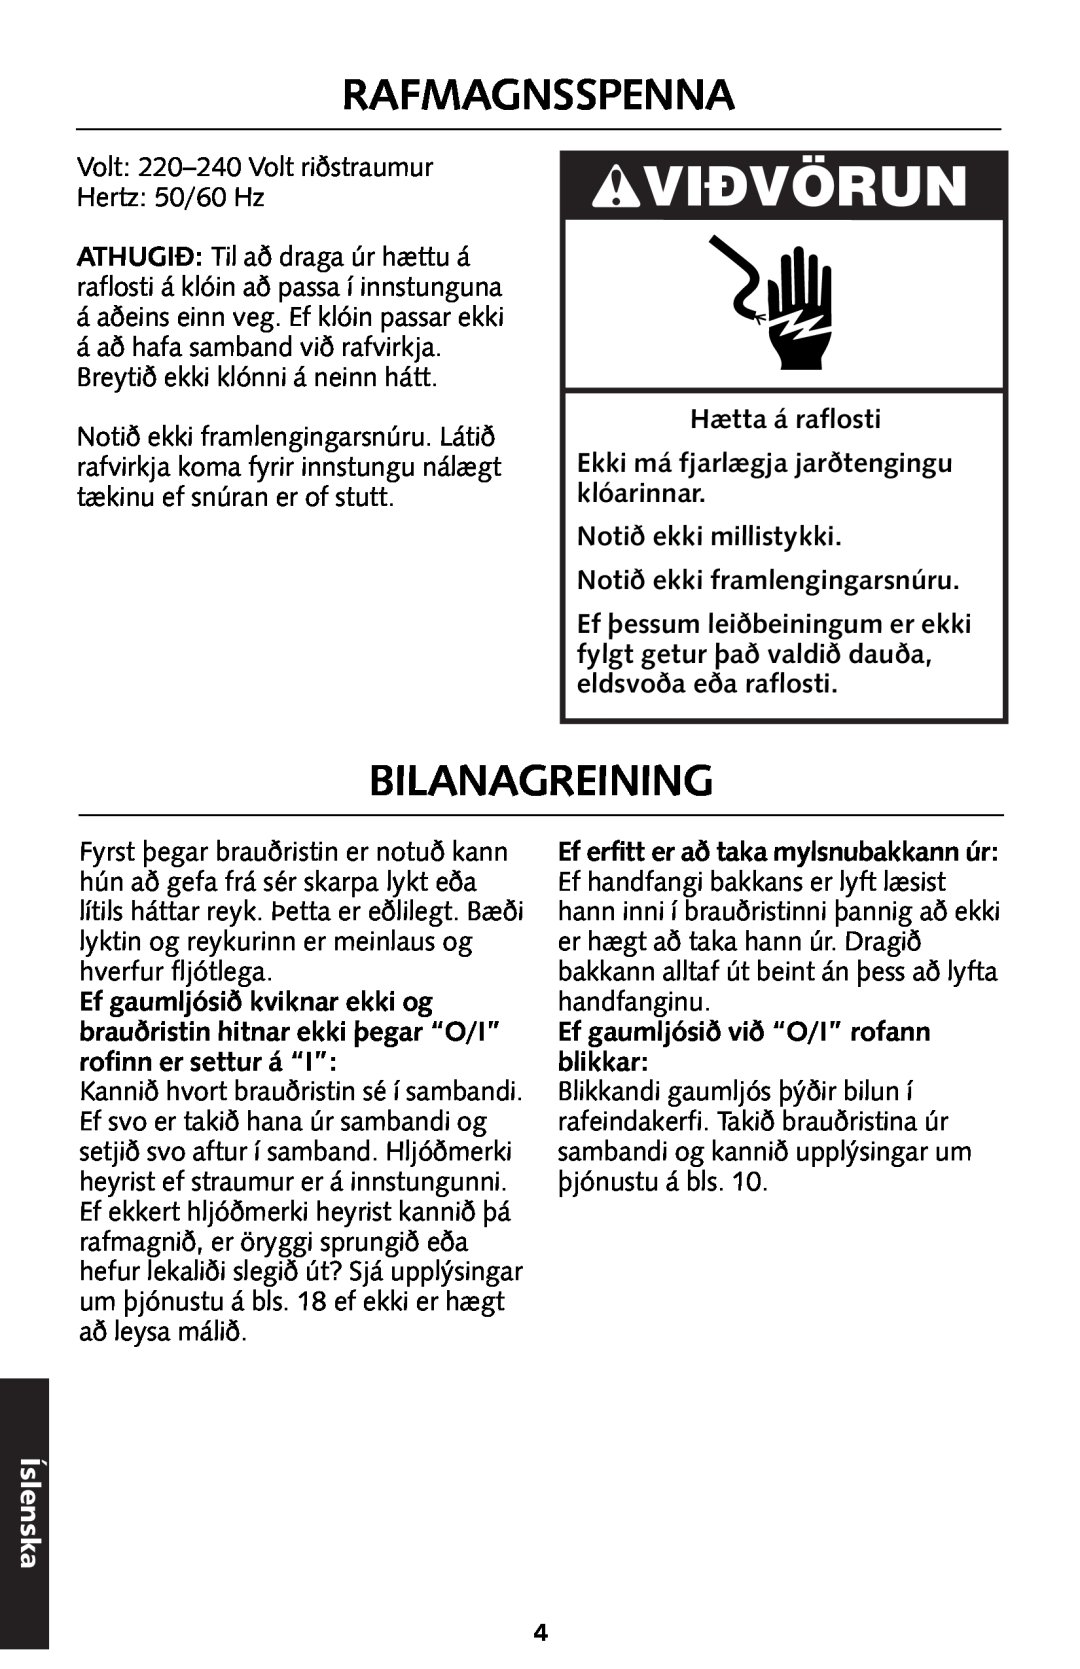 KitchenAid 5KTT890 manual Vidvörun, Rafmagnsspenna, Bilanagreining, Íslenska 